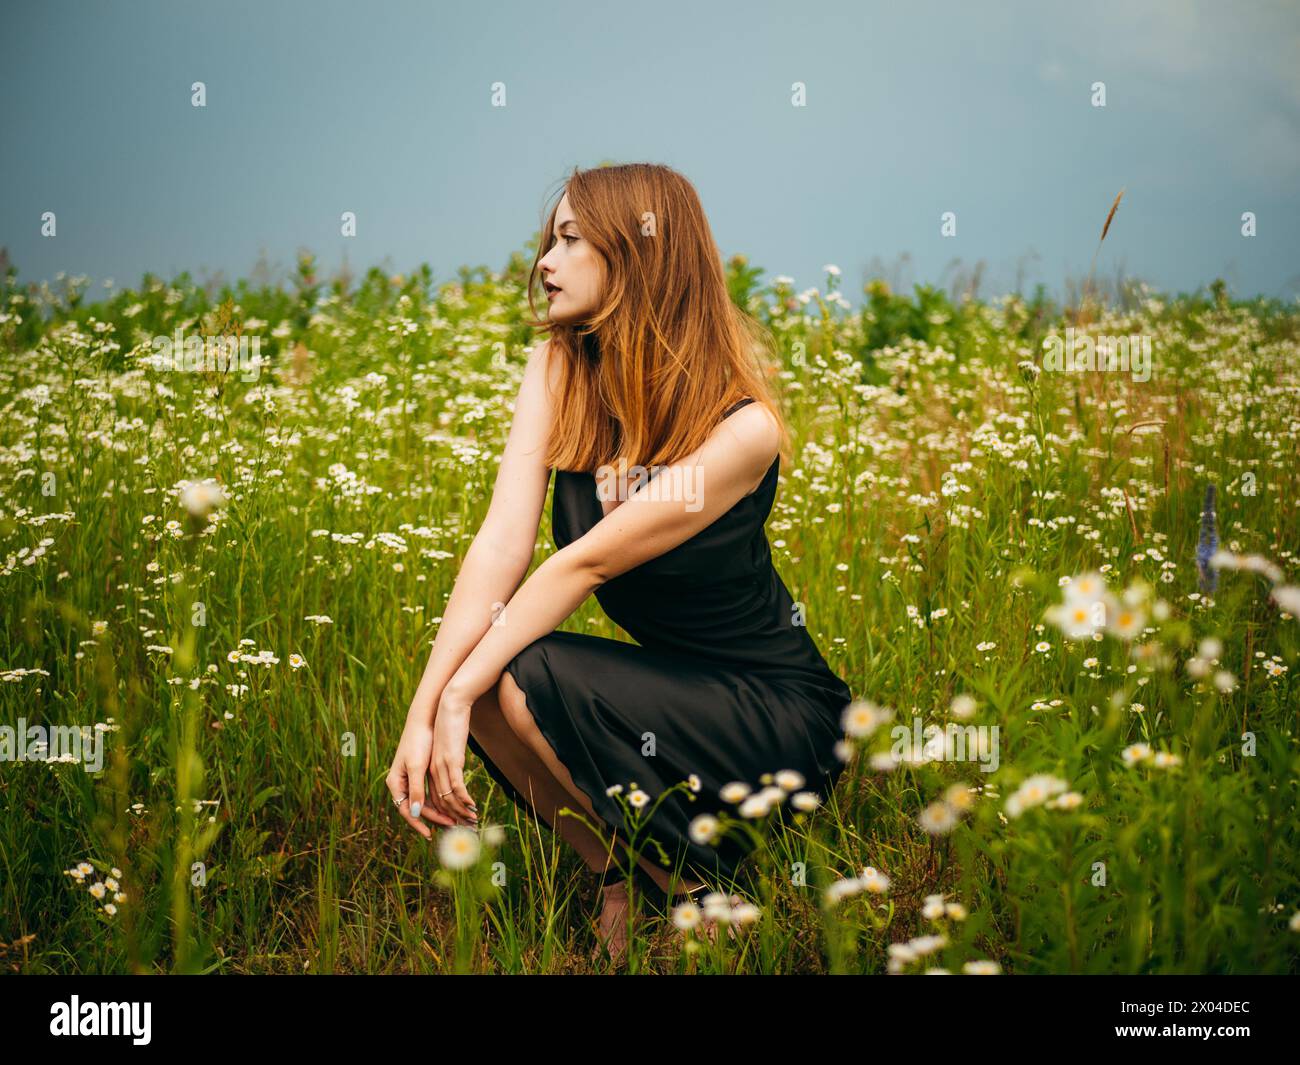 La bella ragazza con un abito da sera nero si accovacciava davanti a un campo a margherita in una nuvolosa giornata estiva. Ritratto di una modella femminile all'aperto. Foto Stock